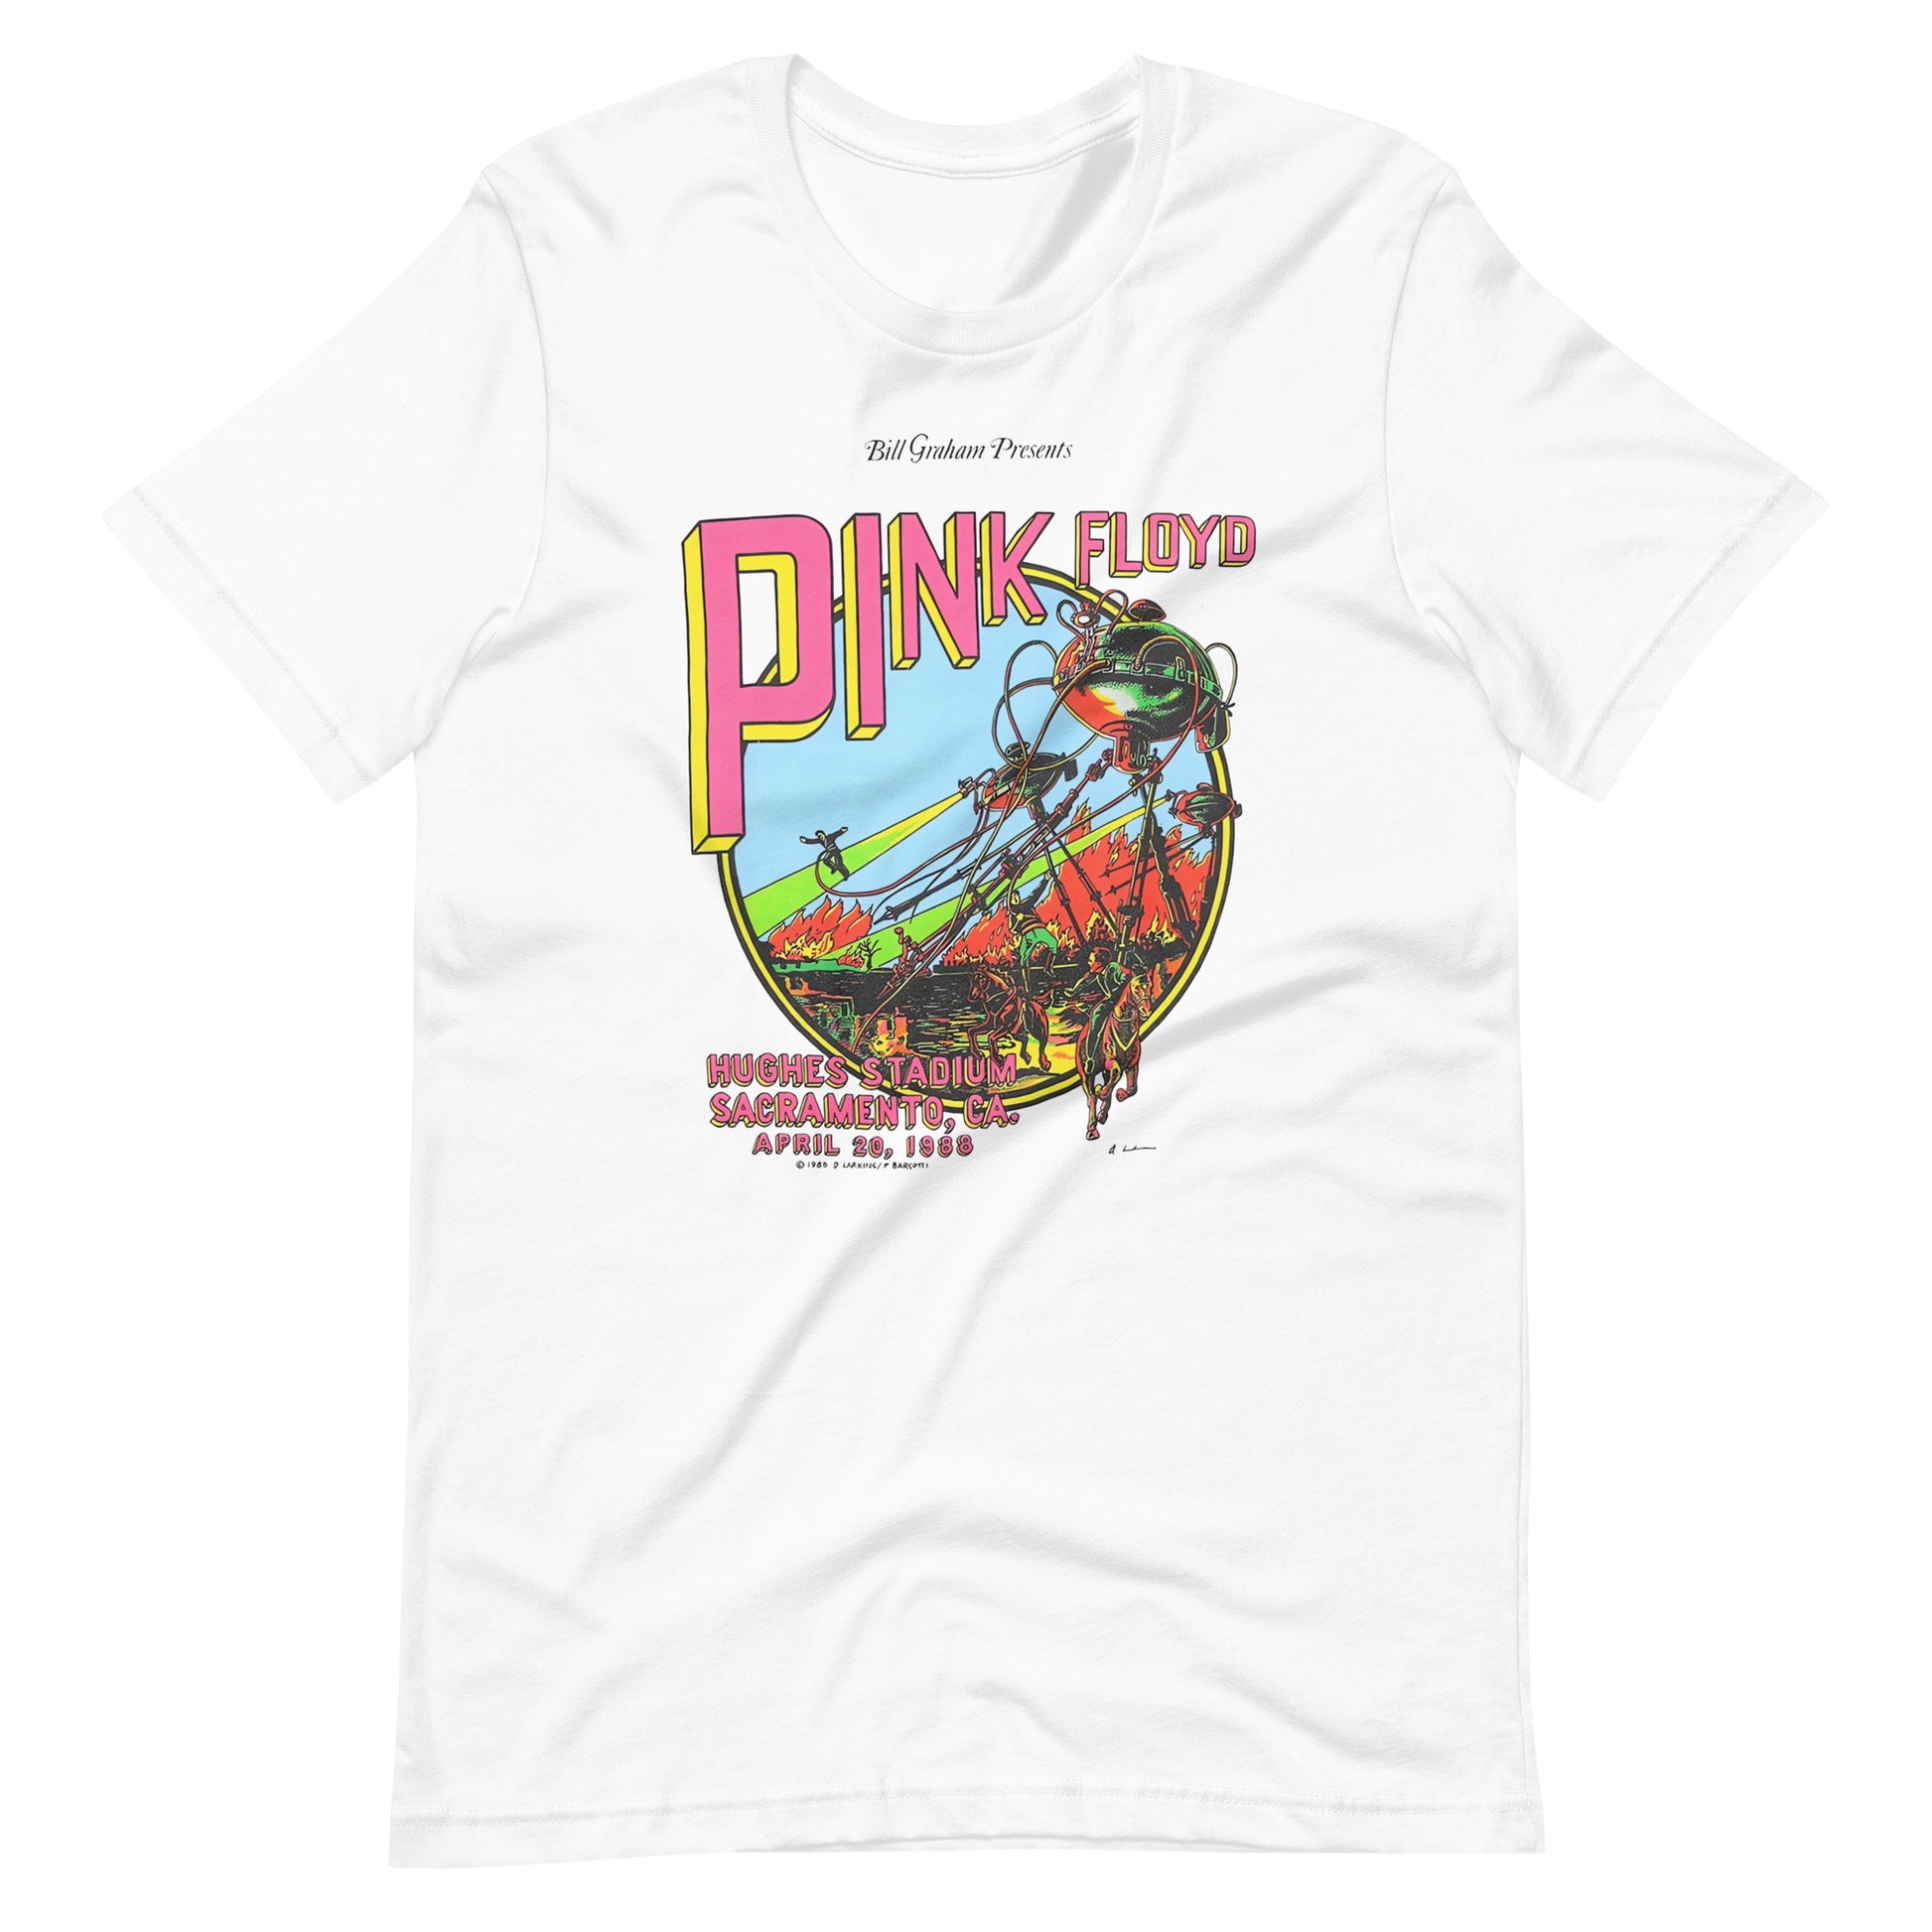 Camiseta Pink Floyd 1988, Disponible en la mejor tienda online para comprar tu merch favorita, la mejor Calidad, compra Ahora en Superstar! 